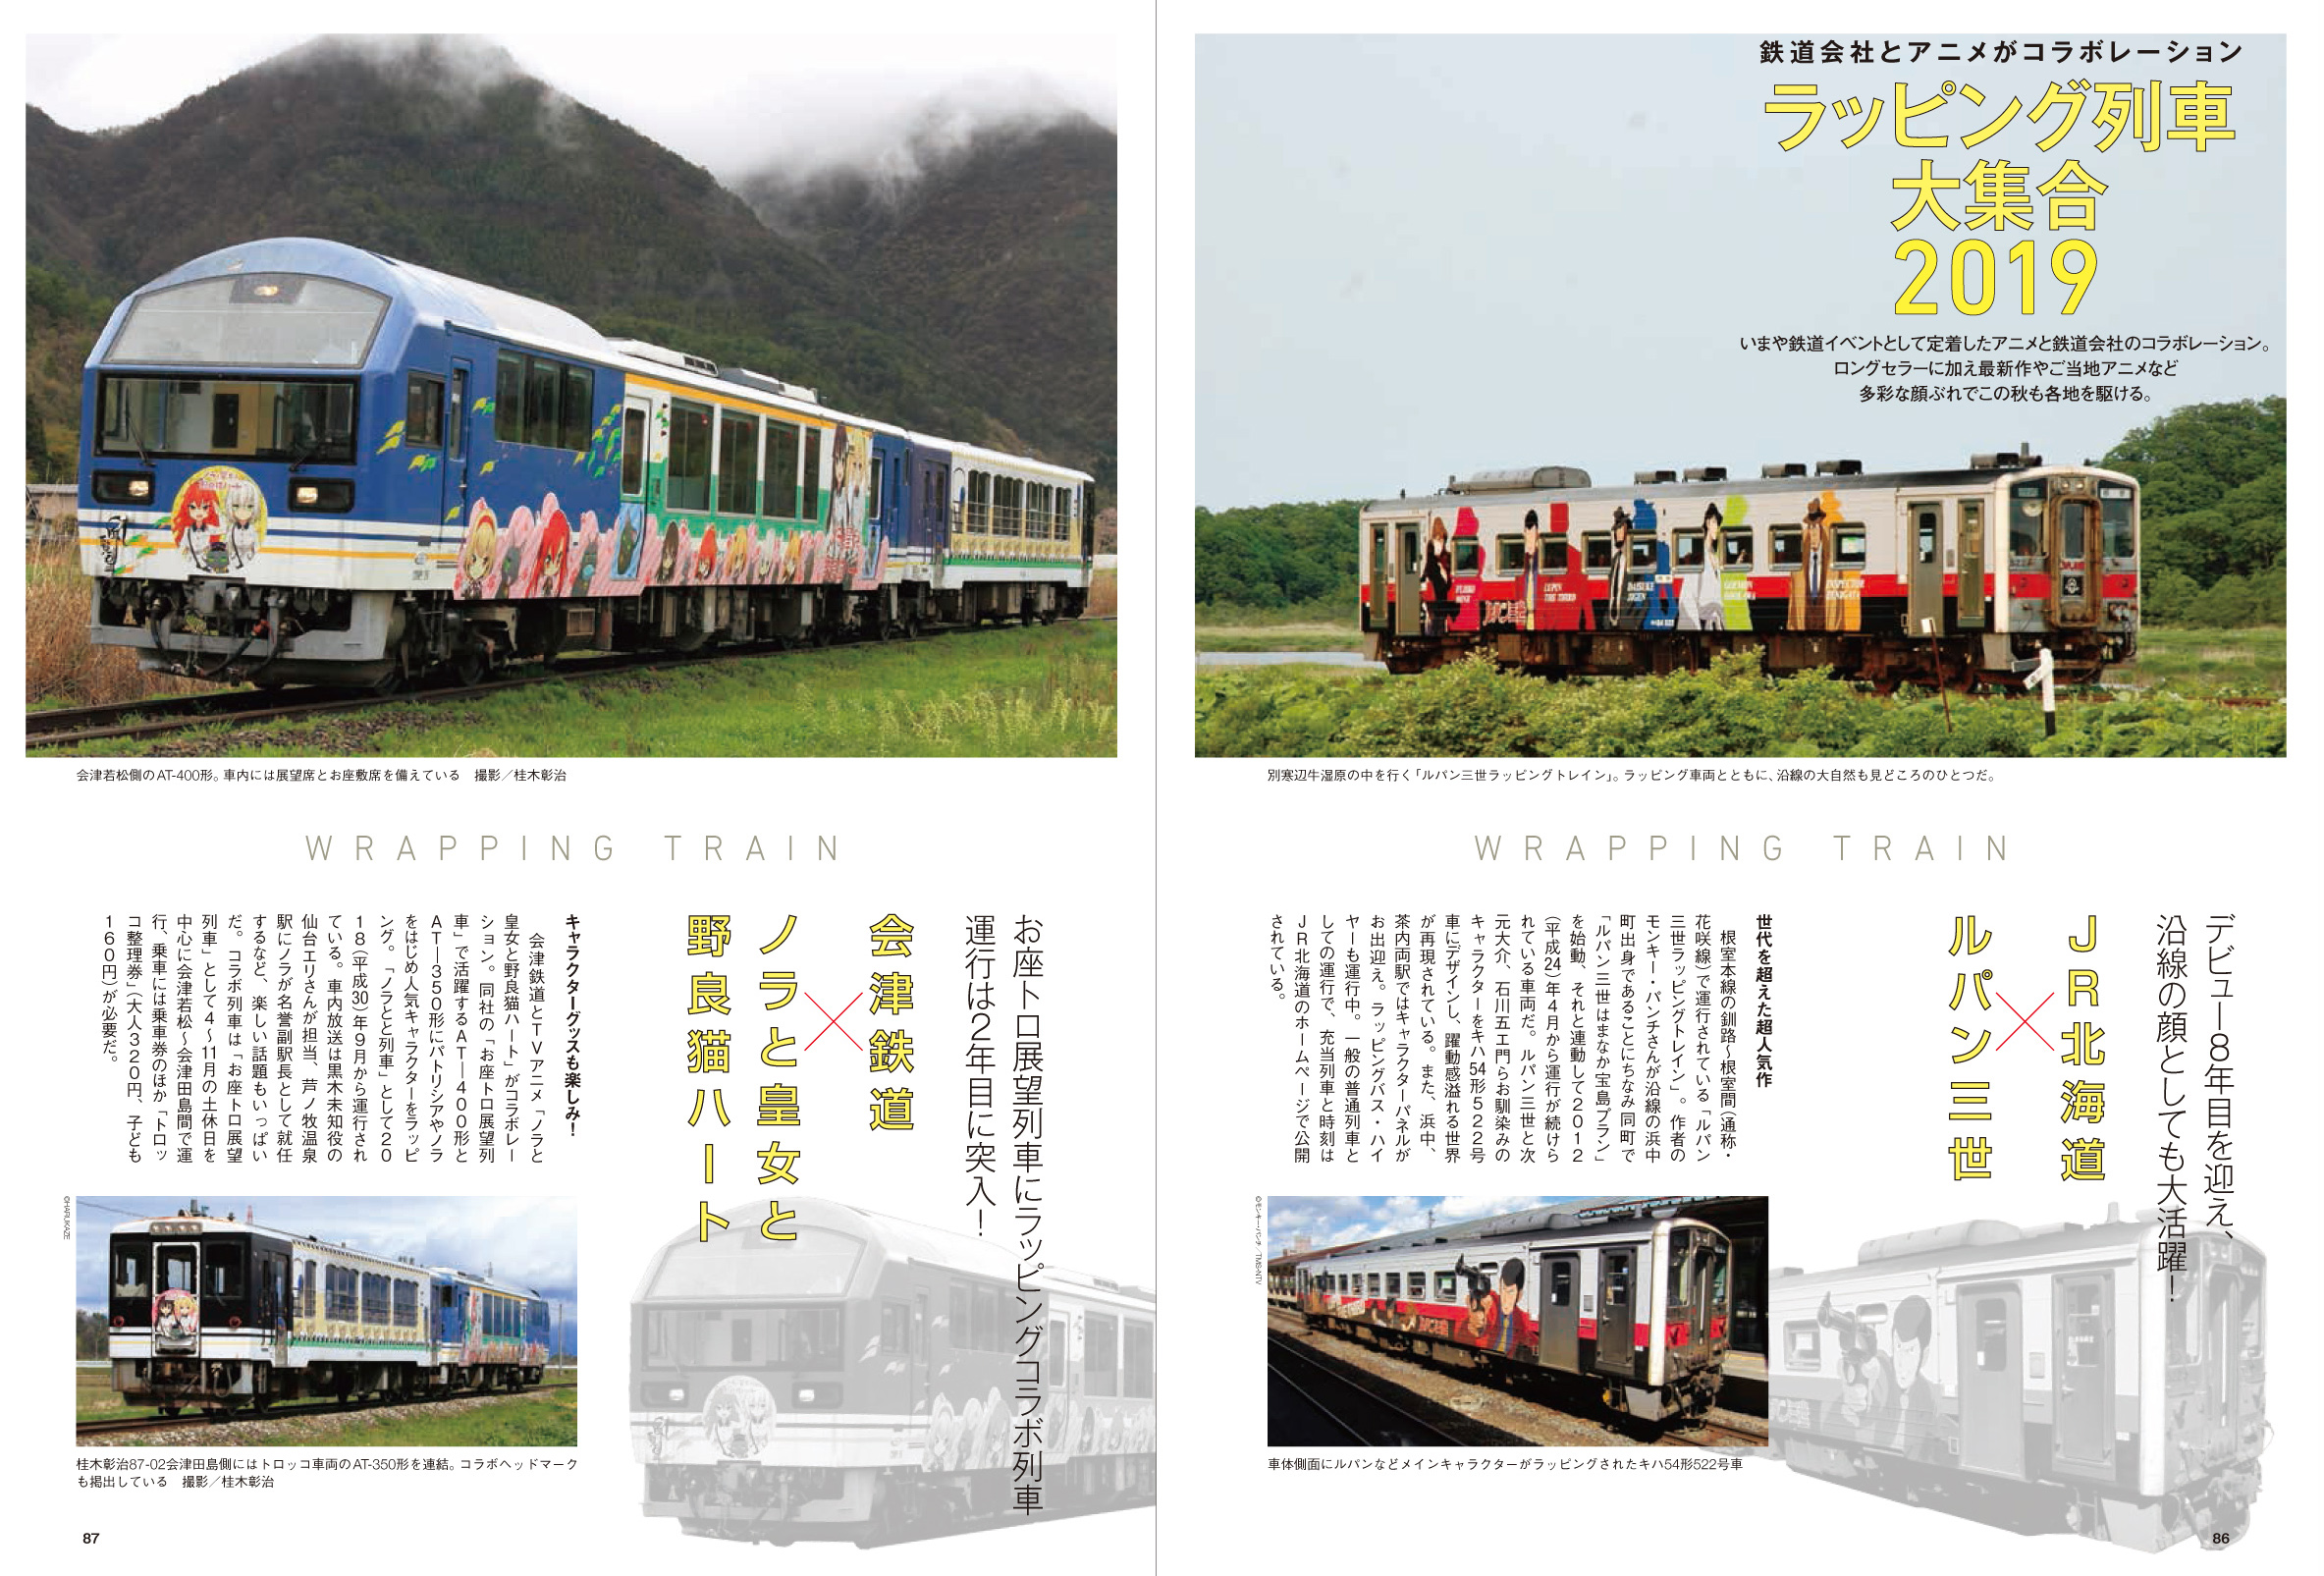 旅と鉄道 19年増刊11月号 アニメと鉄道19 旅鉄web